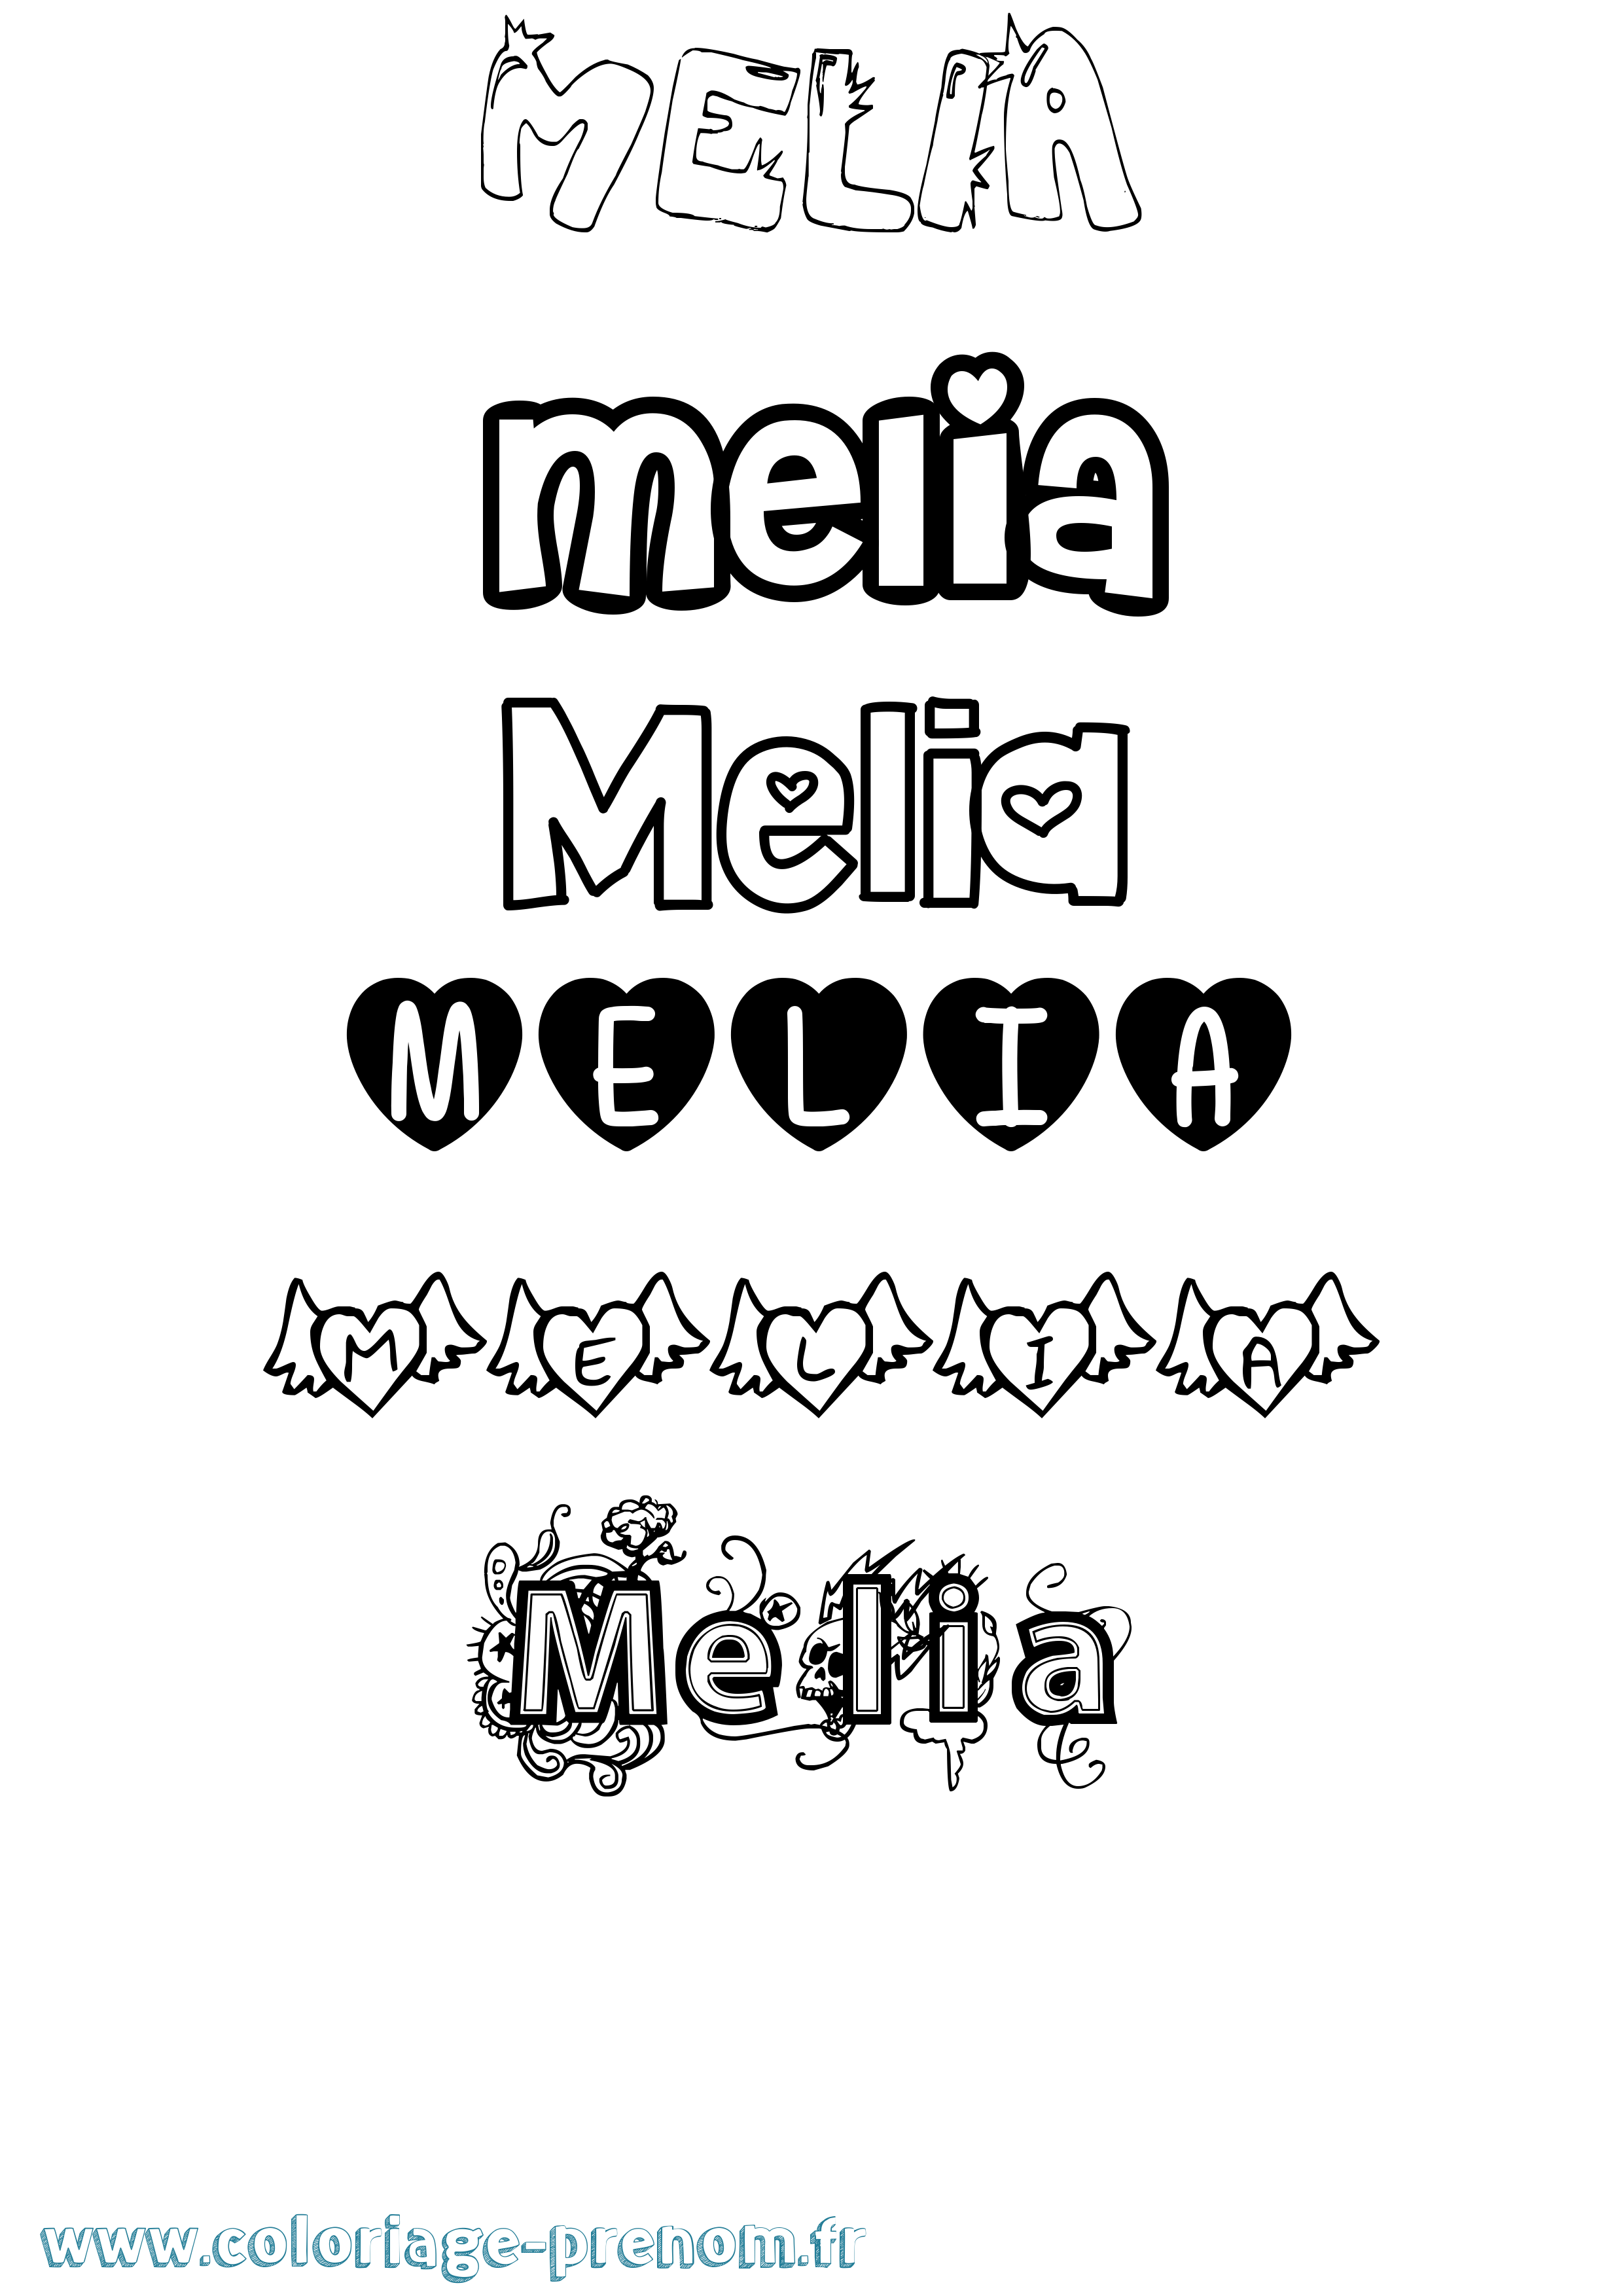 Coloriage prénom Melia